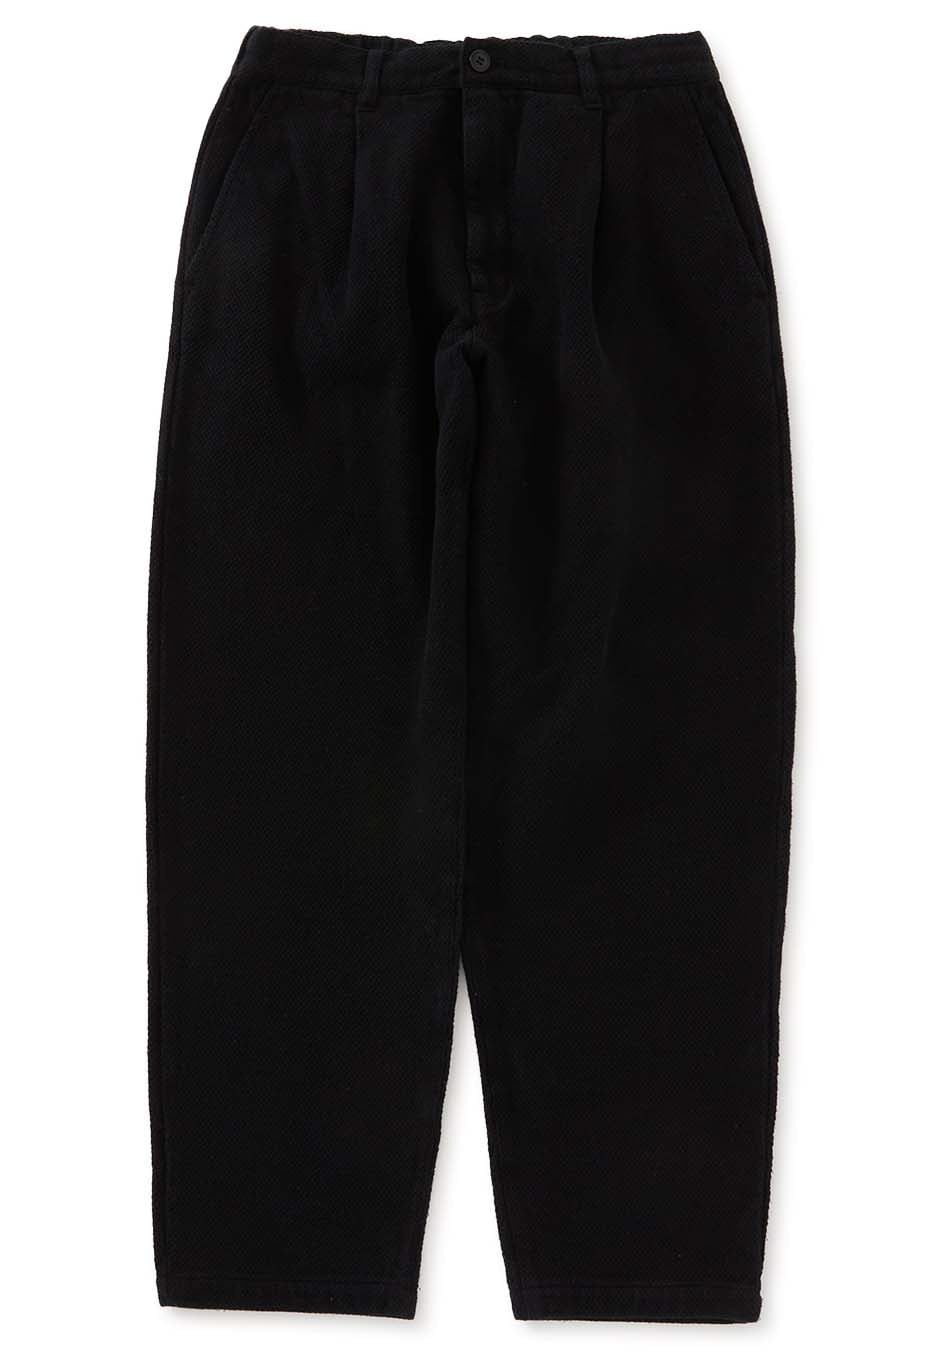 Niju Orisashiko Dark Black Tesome Trousers